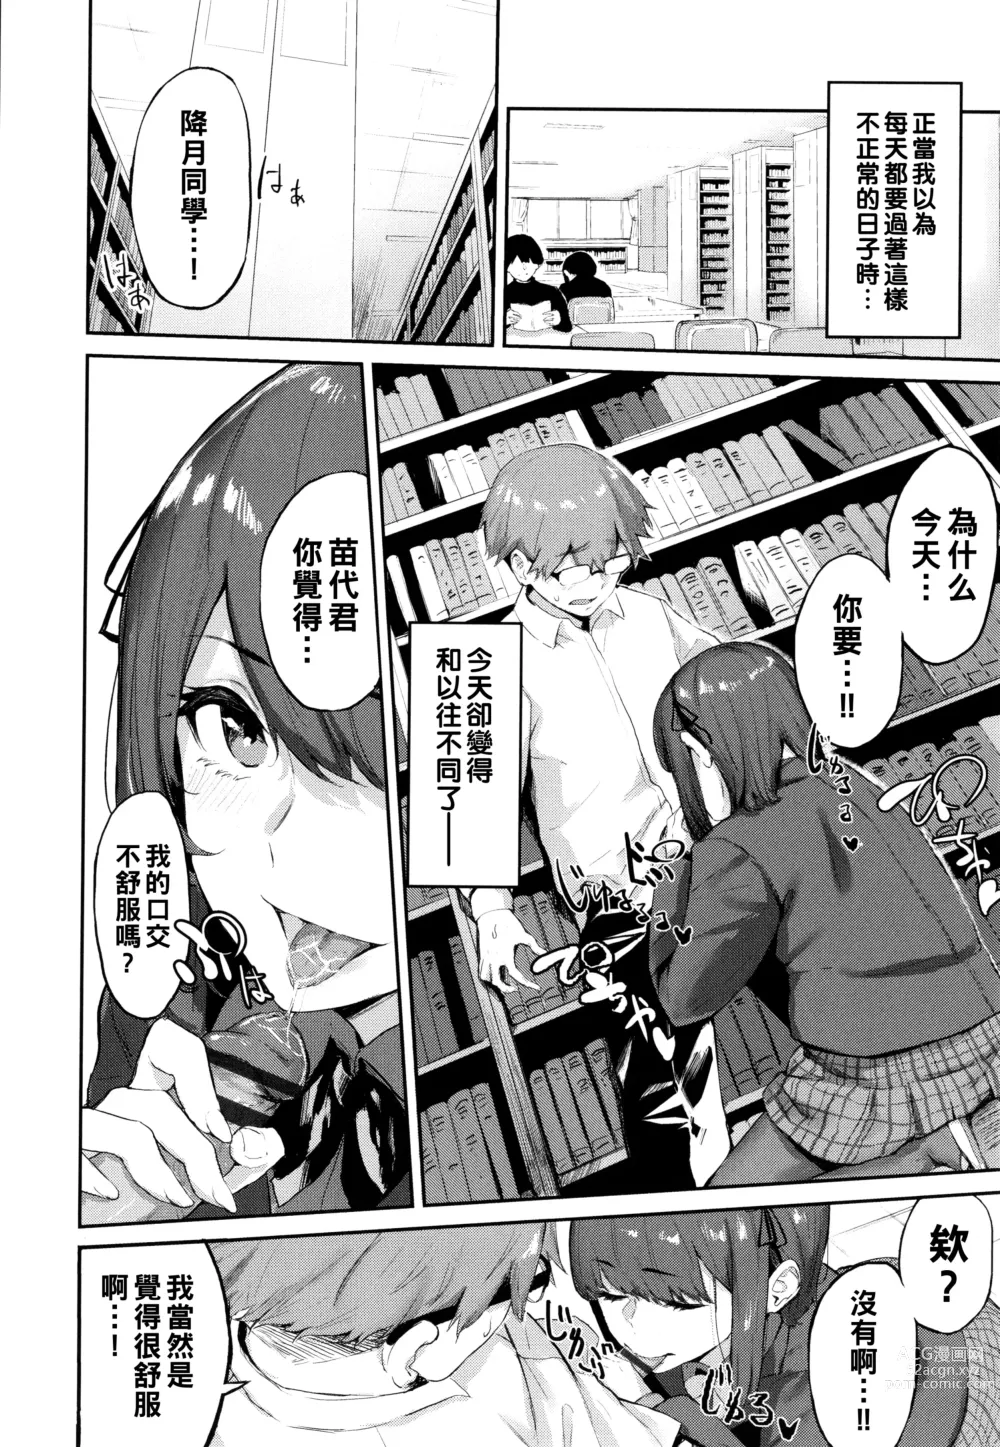 Page 6 of manga Toshoshitsu no Himitsu - Library Secrets